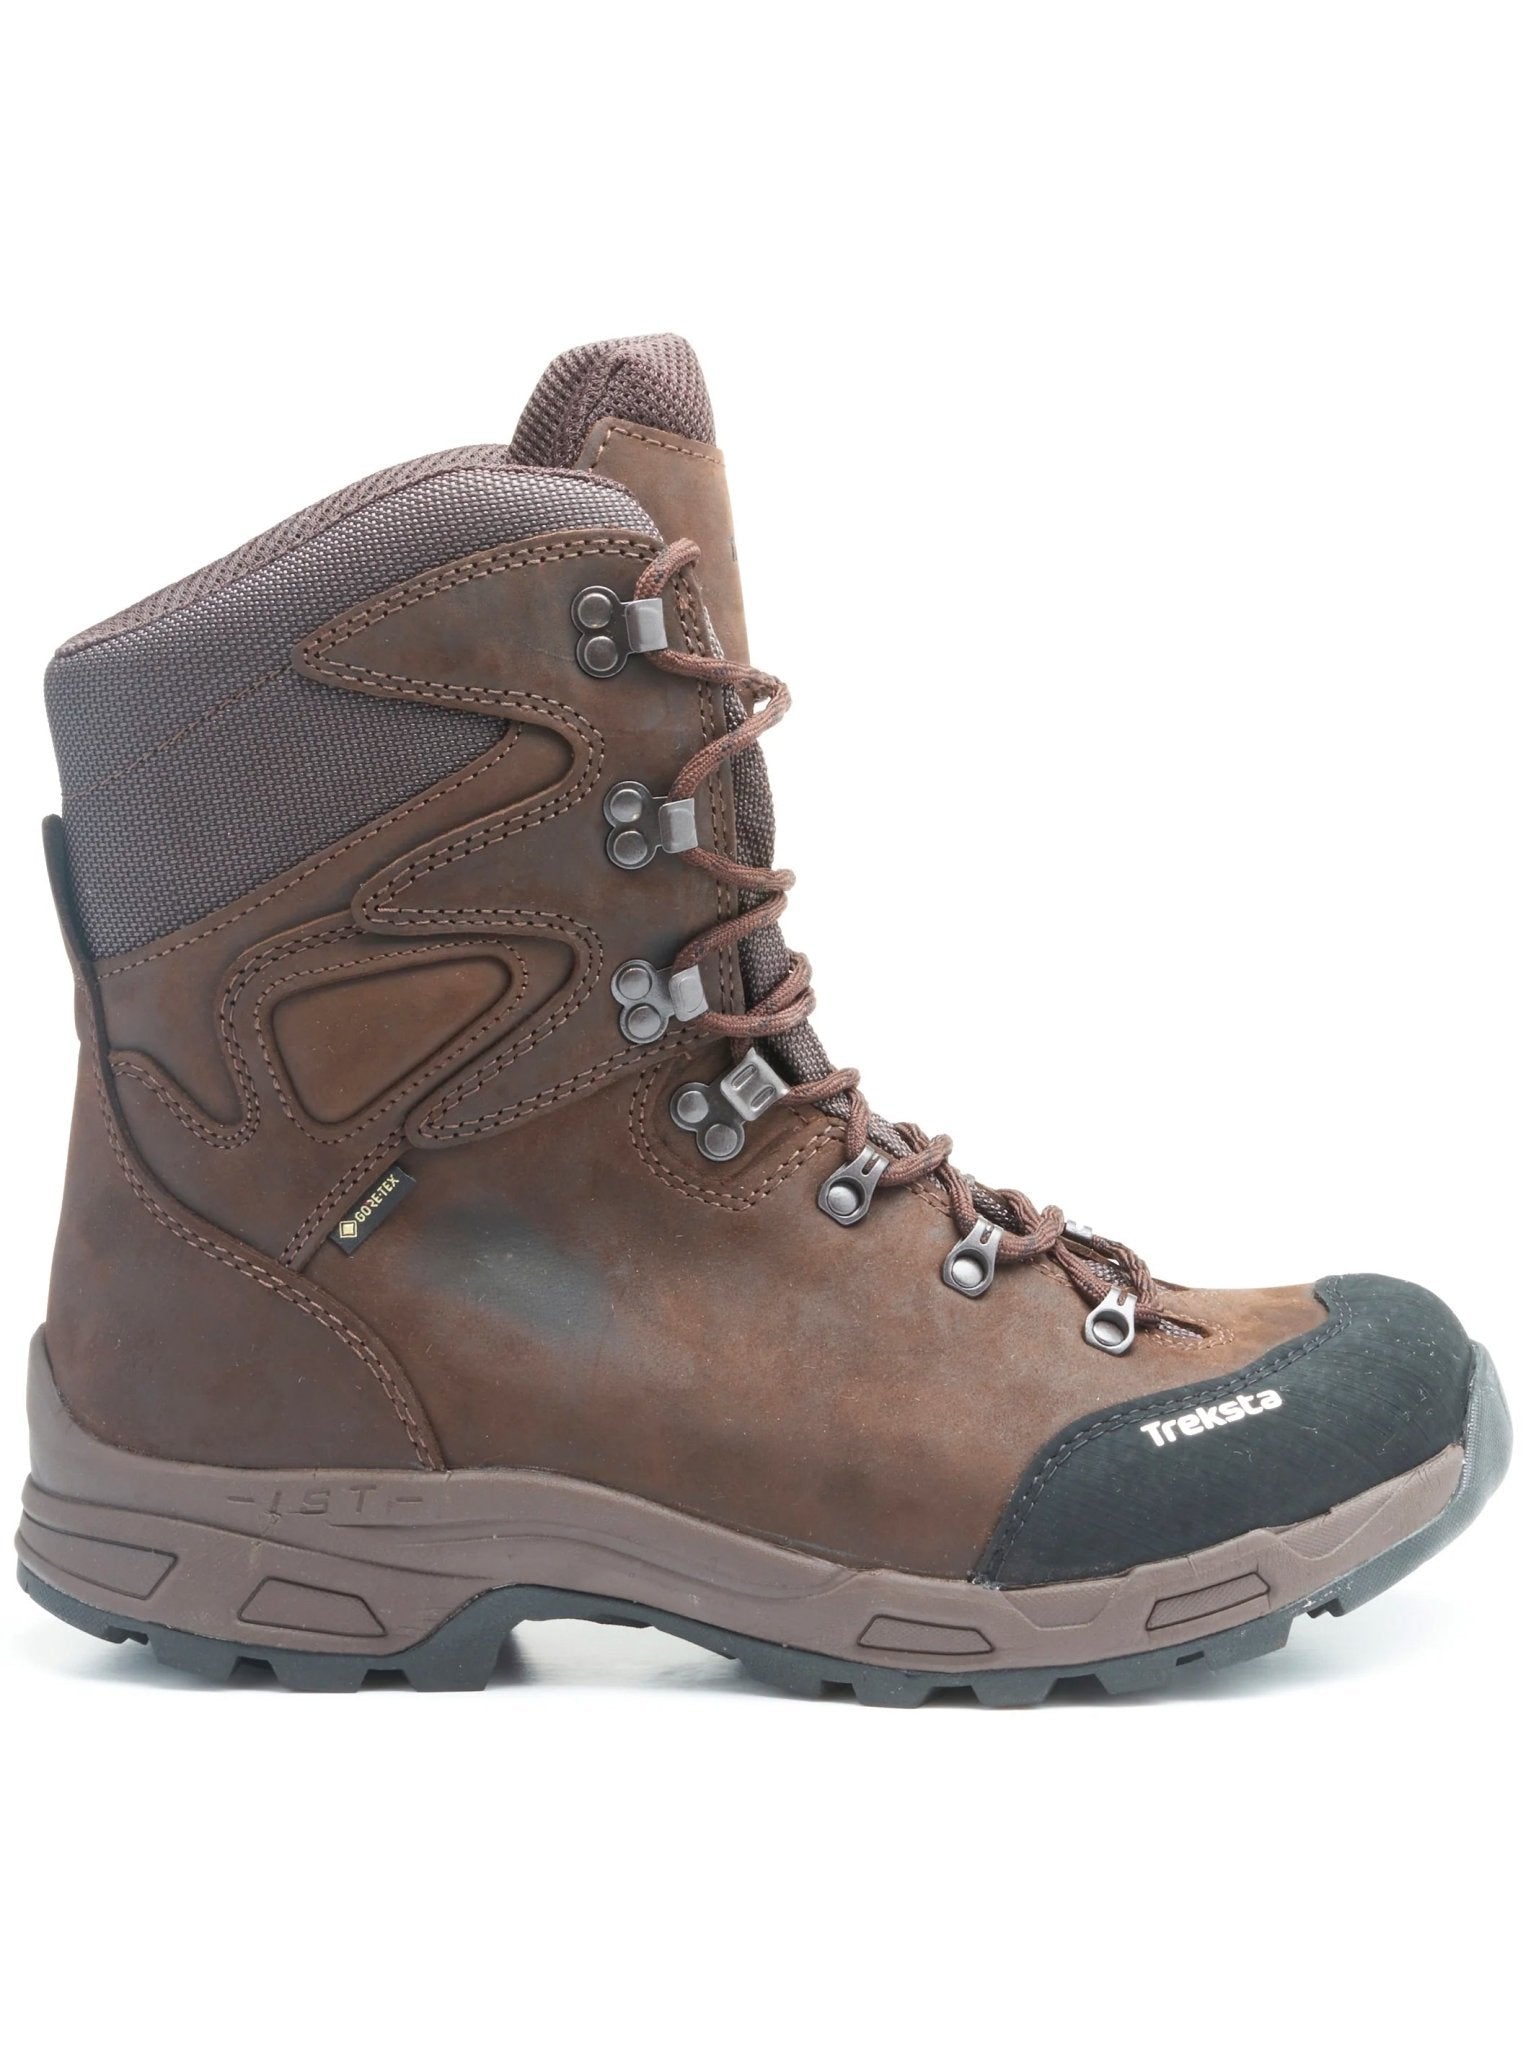 4elementsclothingTrekstaTreksta - Heathfield 8" Boots Gore-Tex Waterproof Lace up boot, with Nestfit and IcelockBoots750122562282